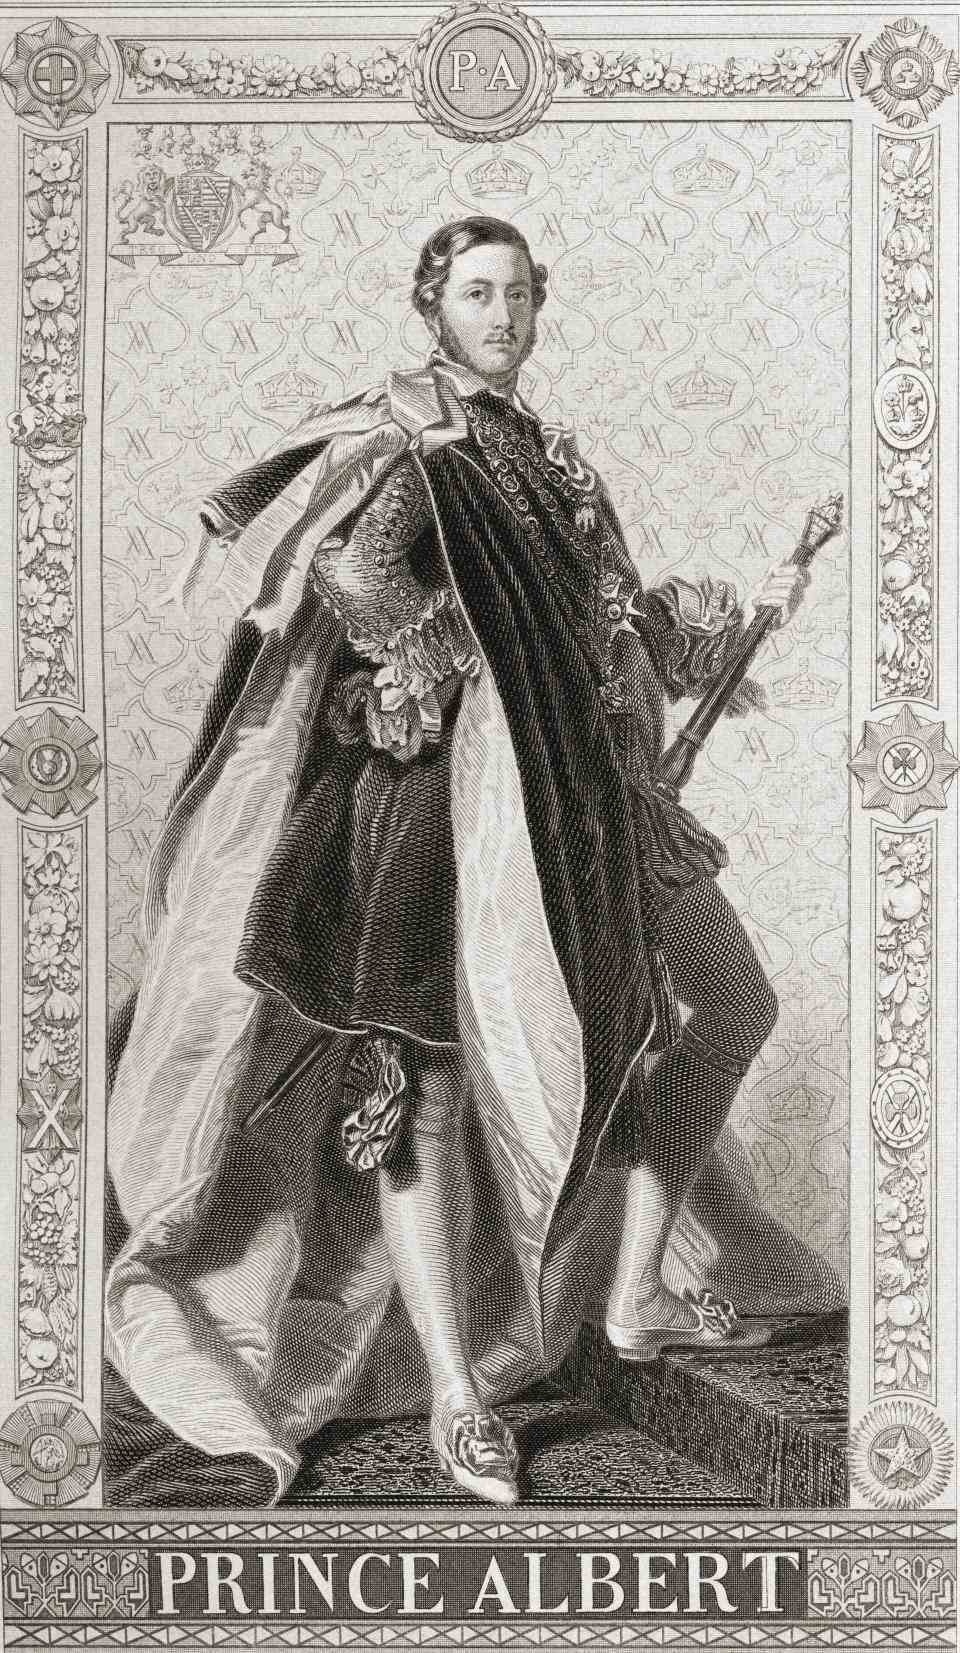 Prince Albert de Saxe-Cobourg et Gotha, Francis Albert Augustus Charles Emmanuel, 1819 &# x002013 ;  1861. Époux de la reine Victoria d'Angleterre.  De l'histoire anglaise et écossaise, publié en 1882